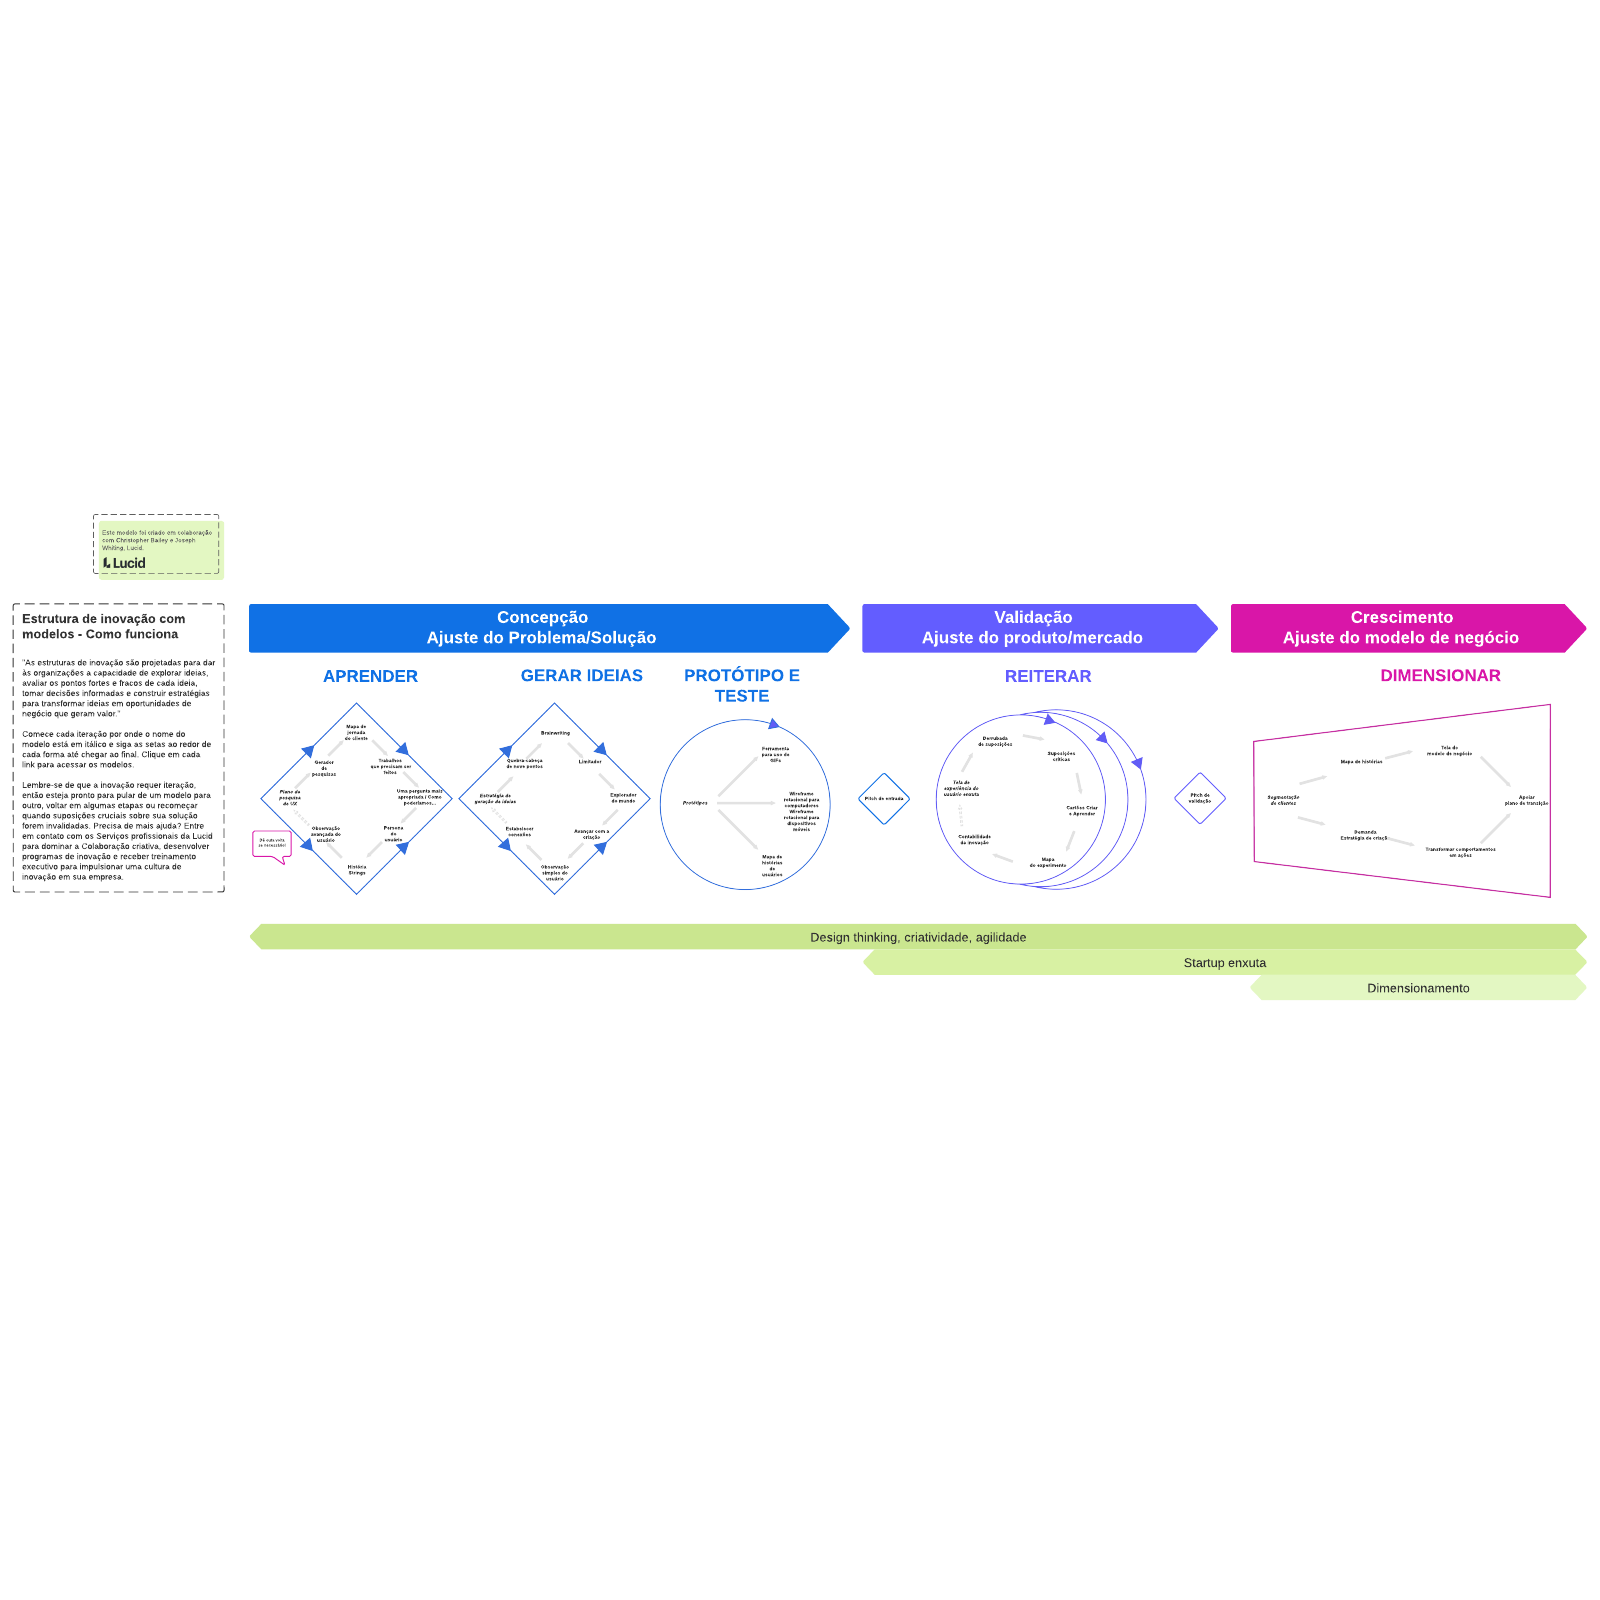 Modelo de estrutura de inovação